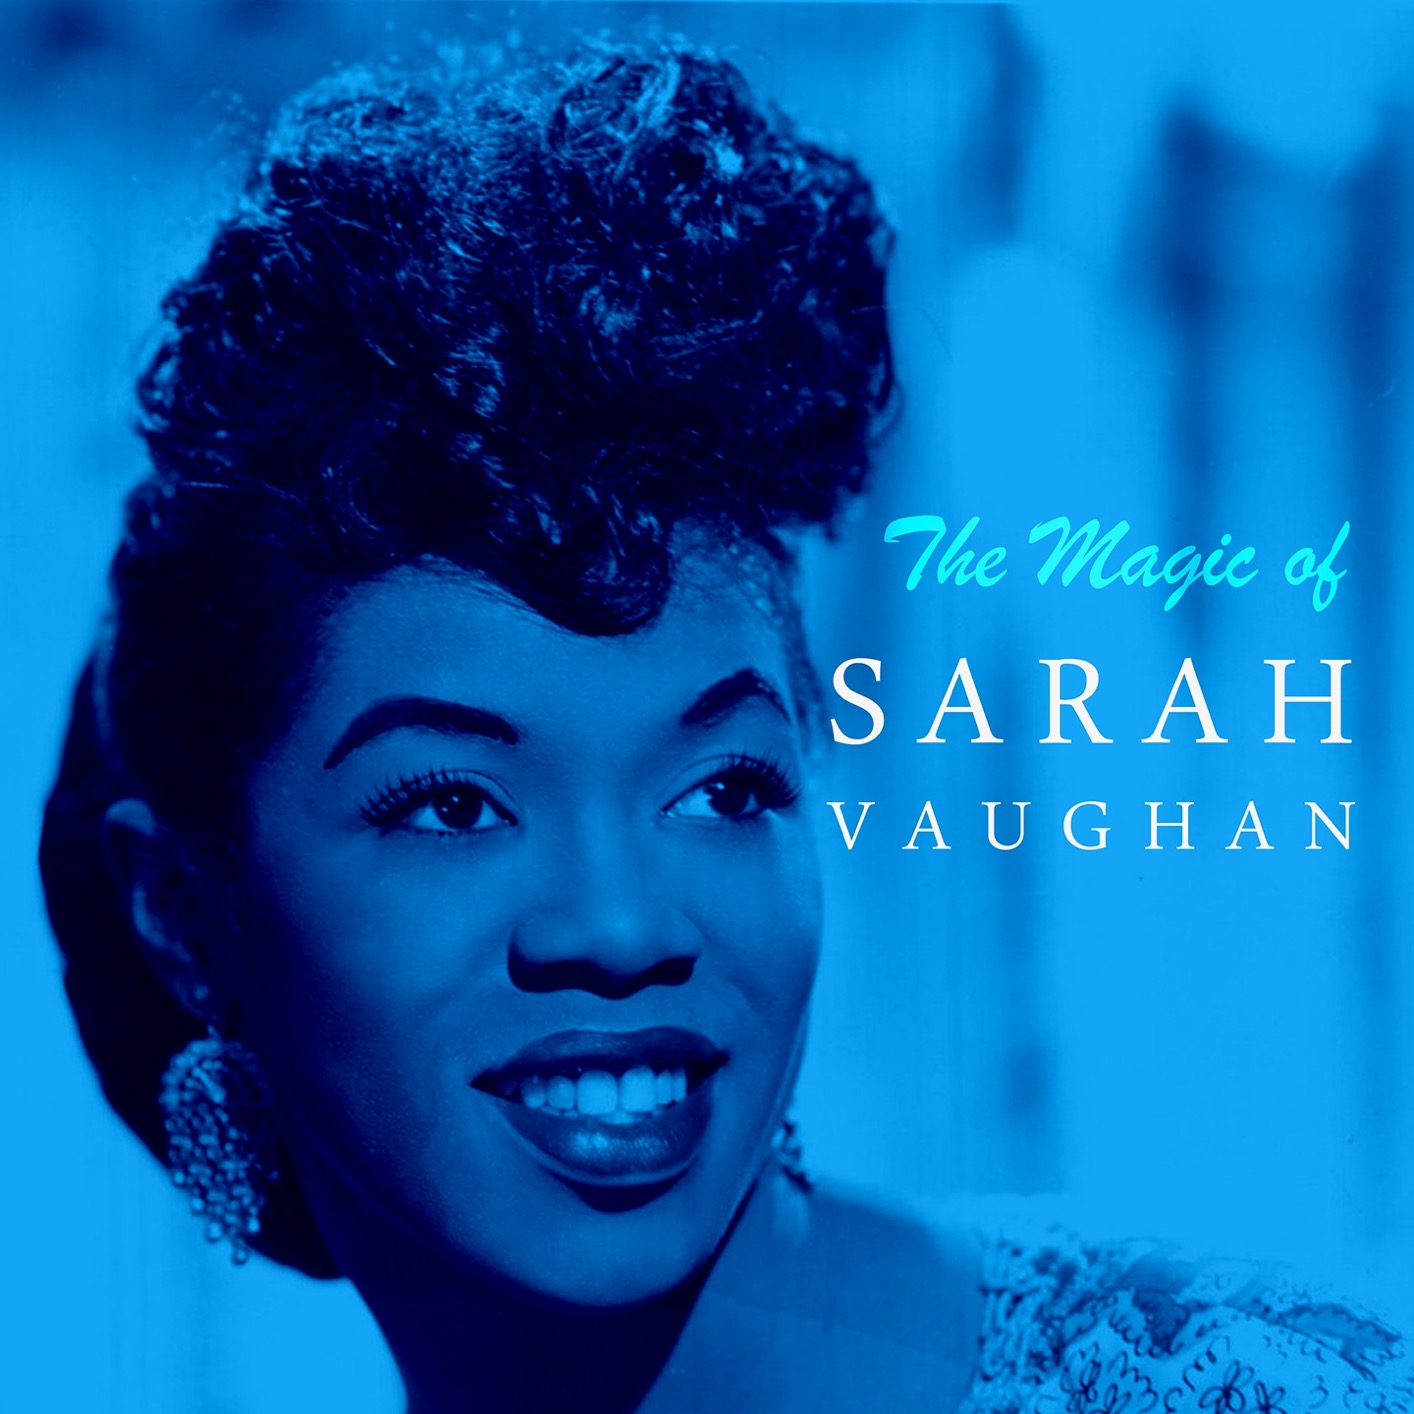 Sarah Vaughan - The Magic of Sarah Vaughan (Remastered) (2016) [FLAC 24bit/96kHz]